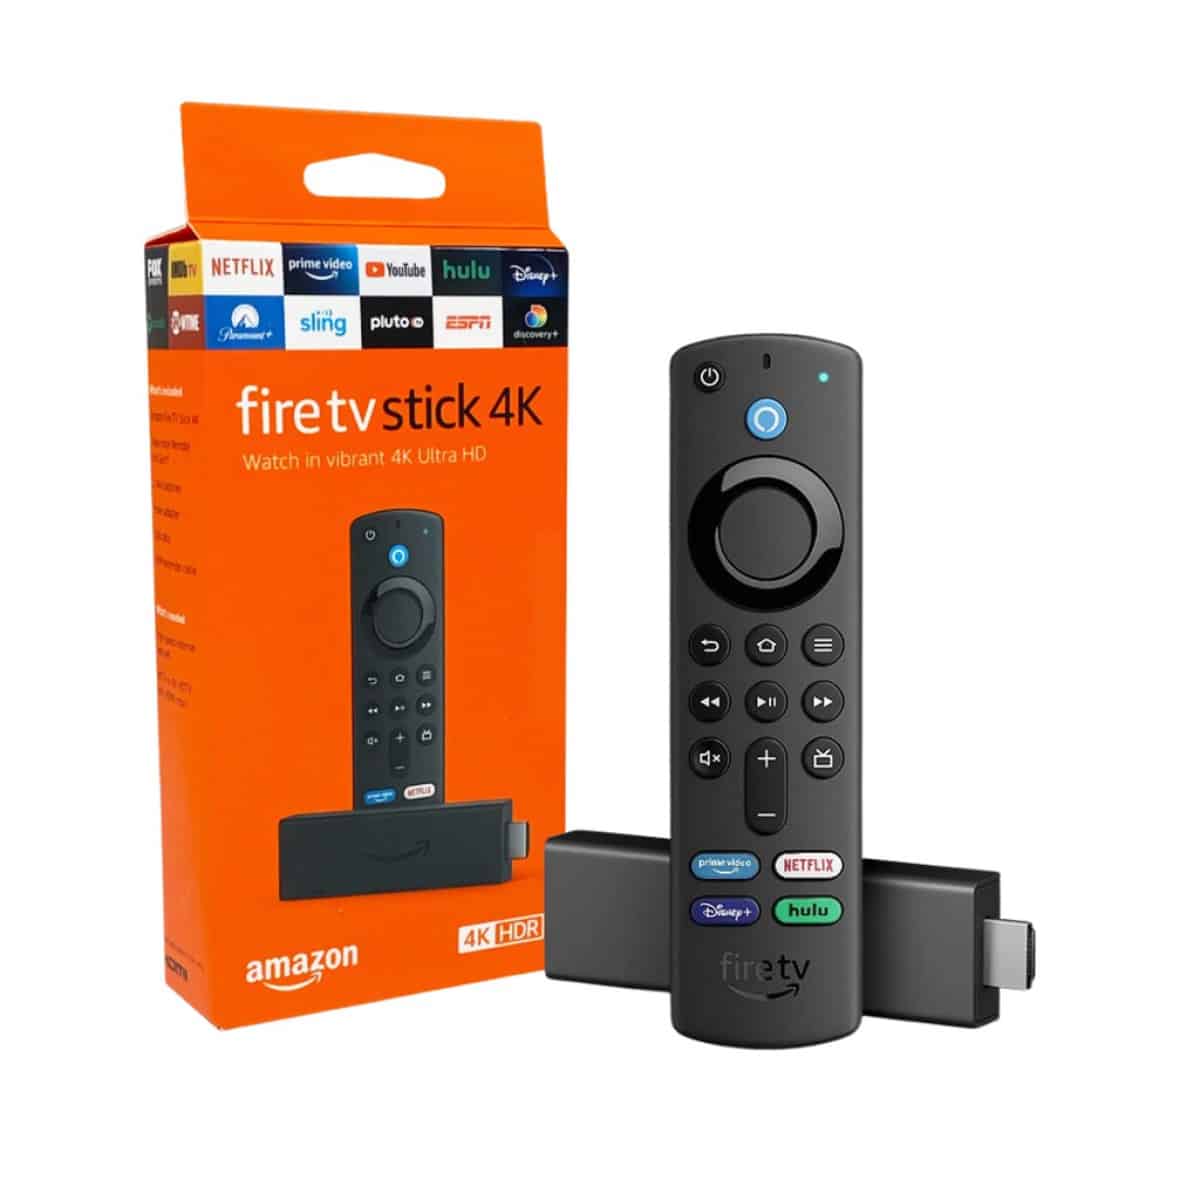 Which IPTV works best on Firestick?